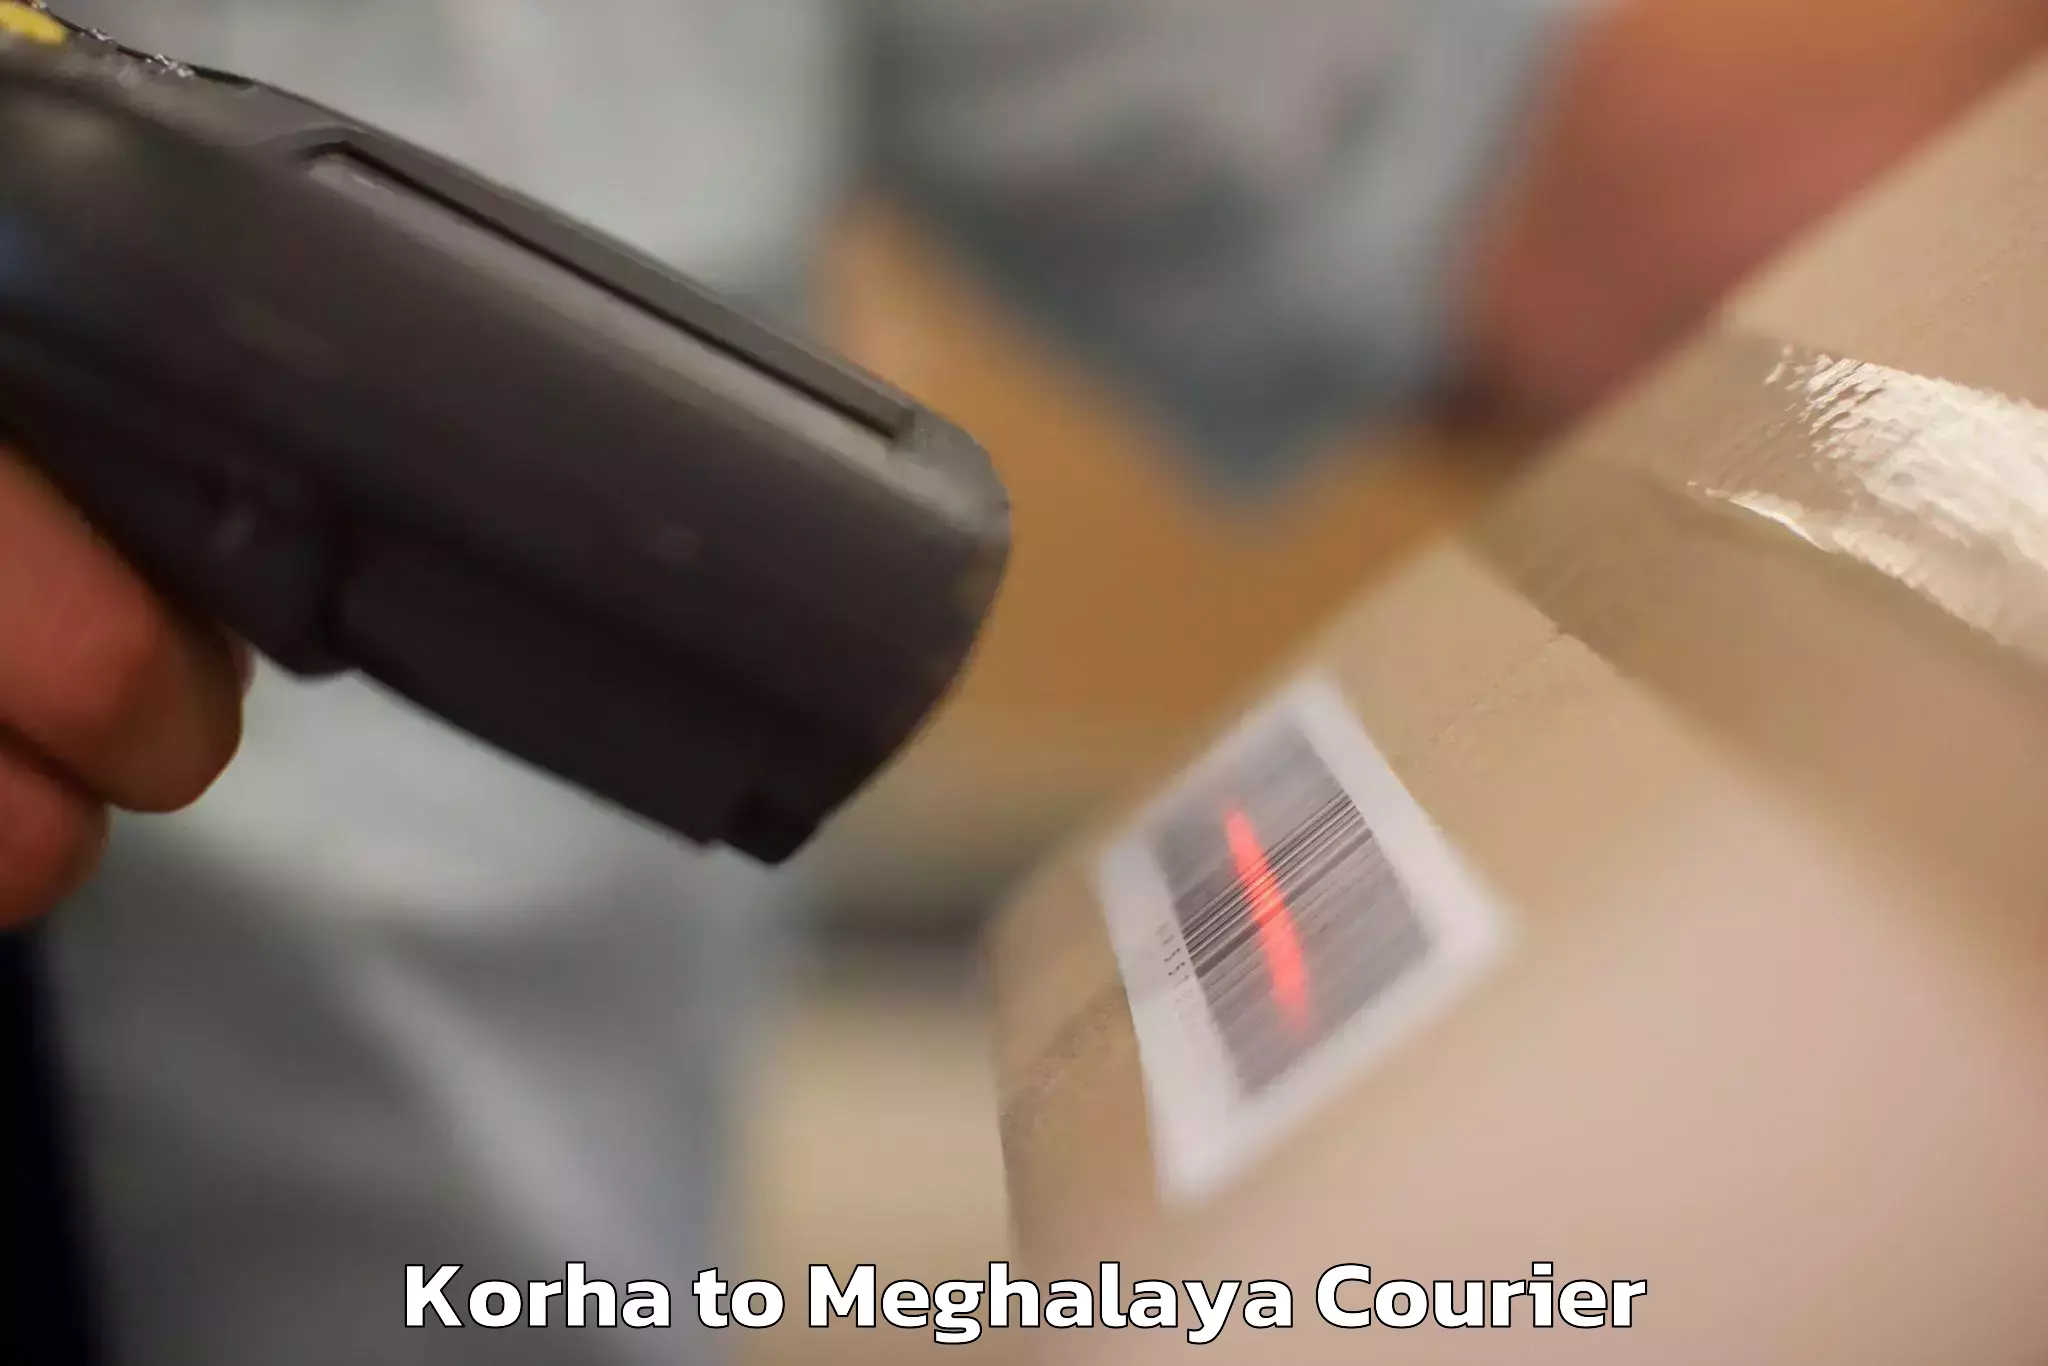 Hassle-free luggage shipping Korha to Shillong